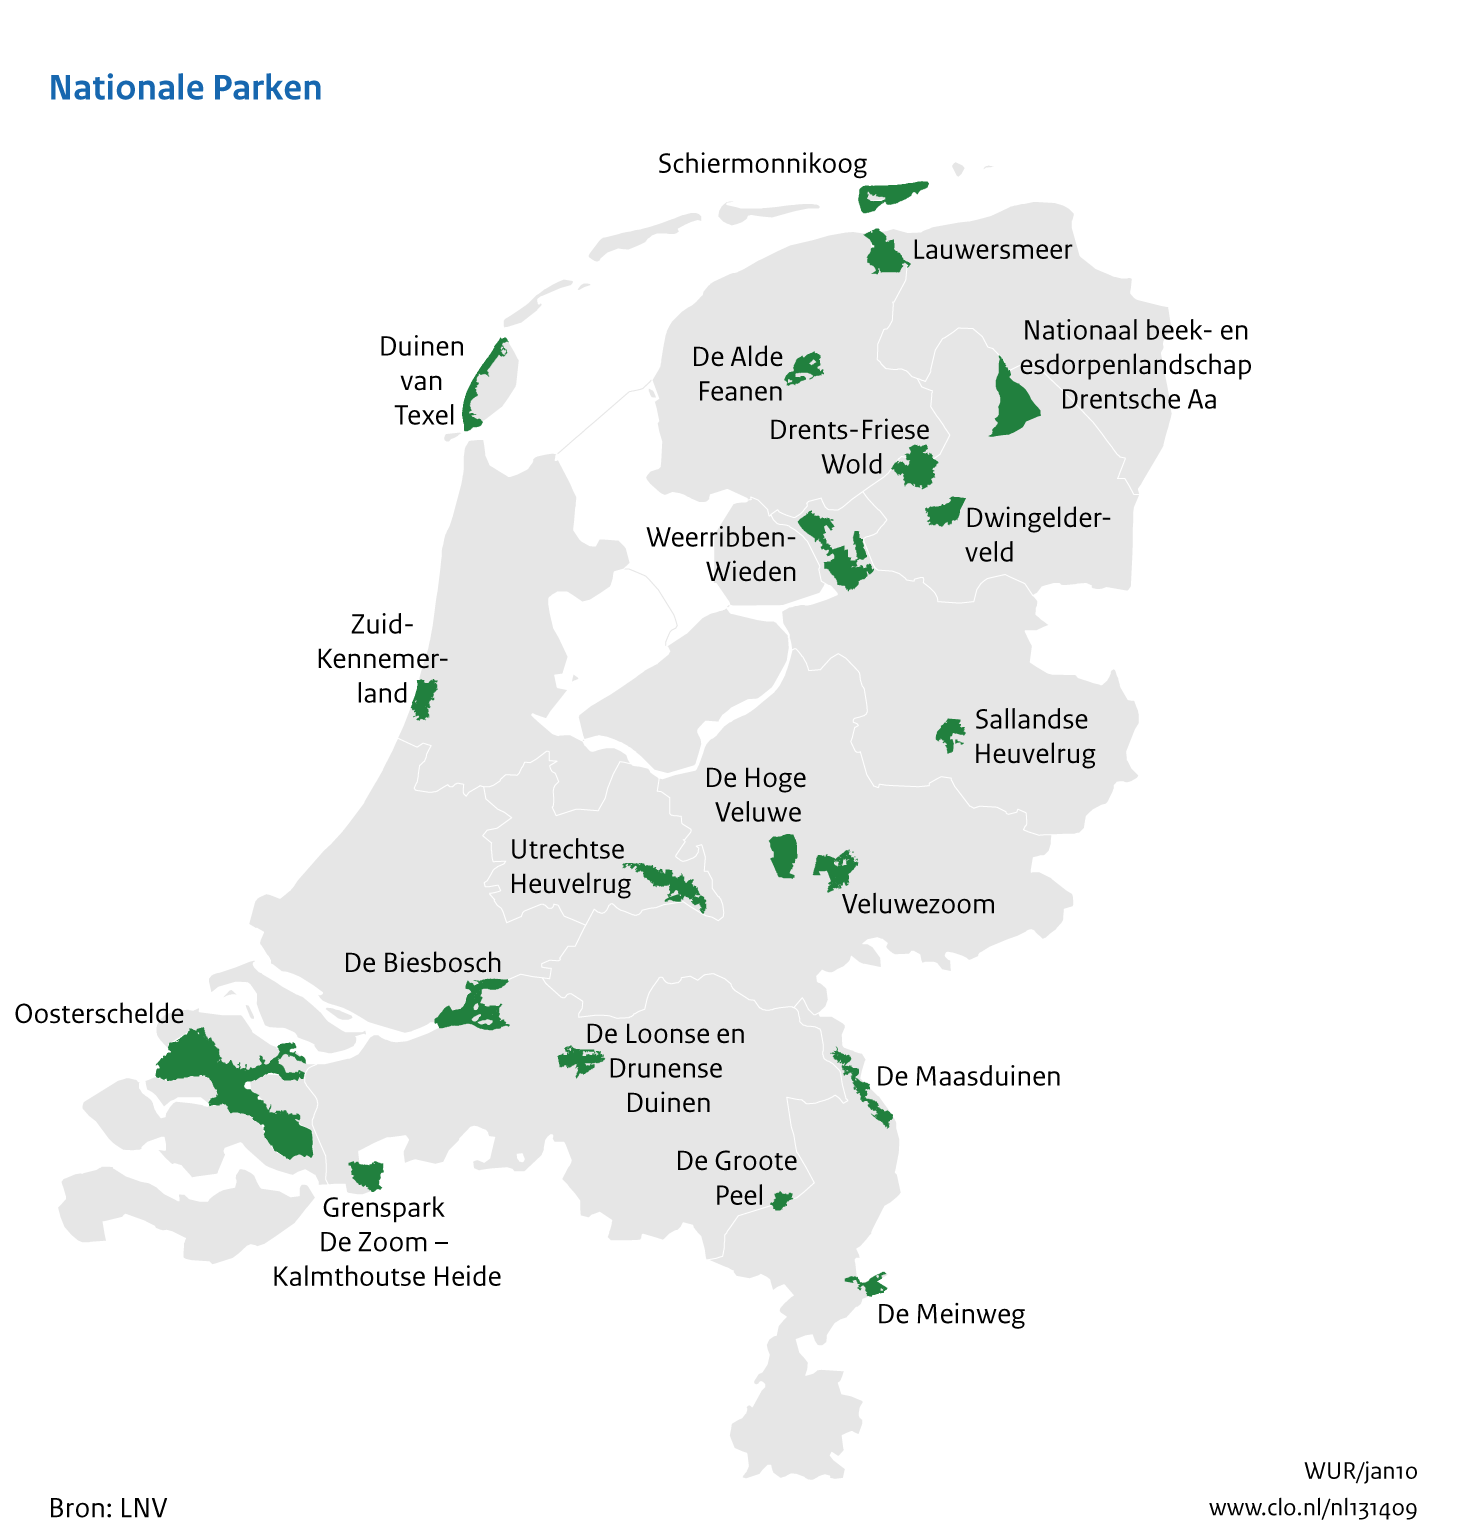 Figuur Kaart van de nationale parken in Nederland. In de rest van de tekst wordt deze figuur uitgebreider uitgelegd.